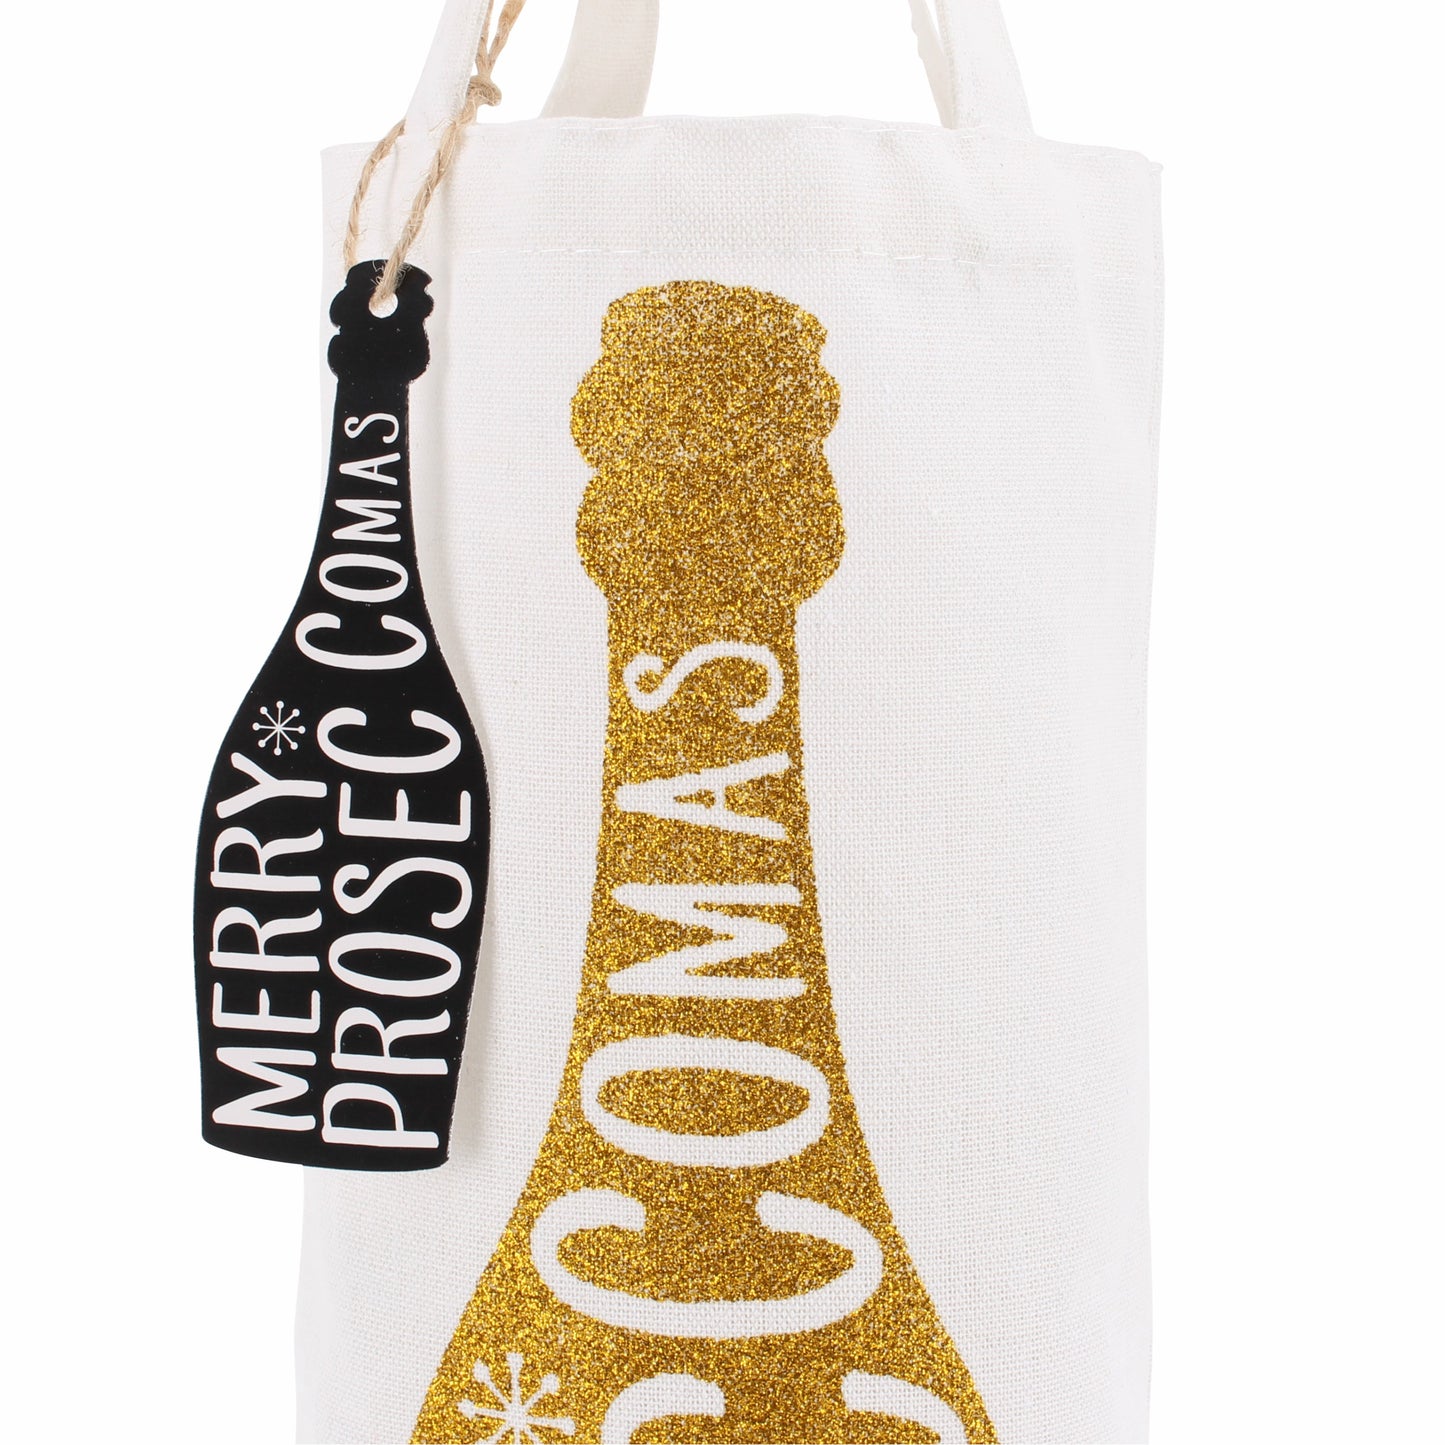 Gold Merry Prosecco-mas Bottle Bag